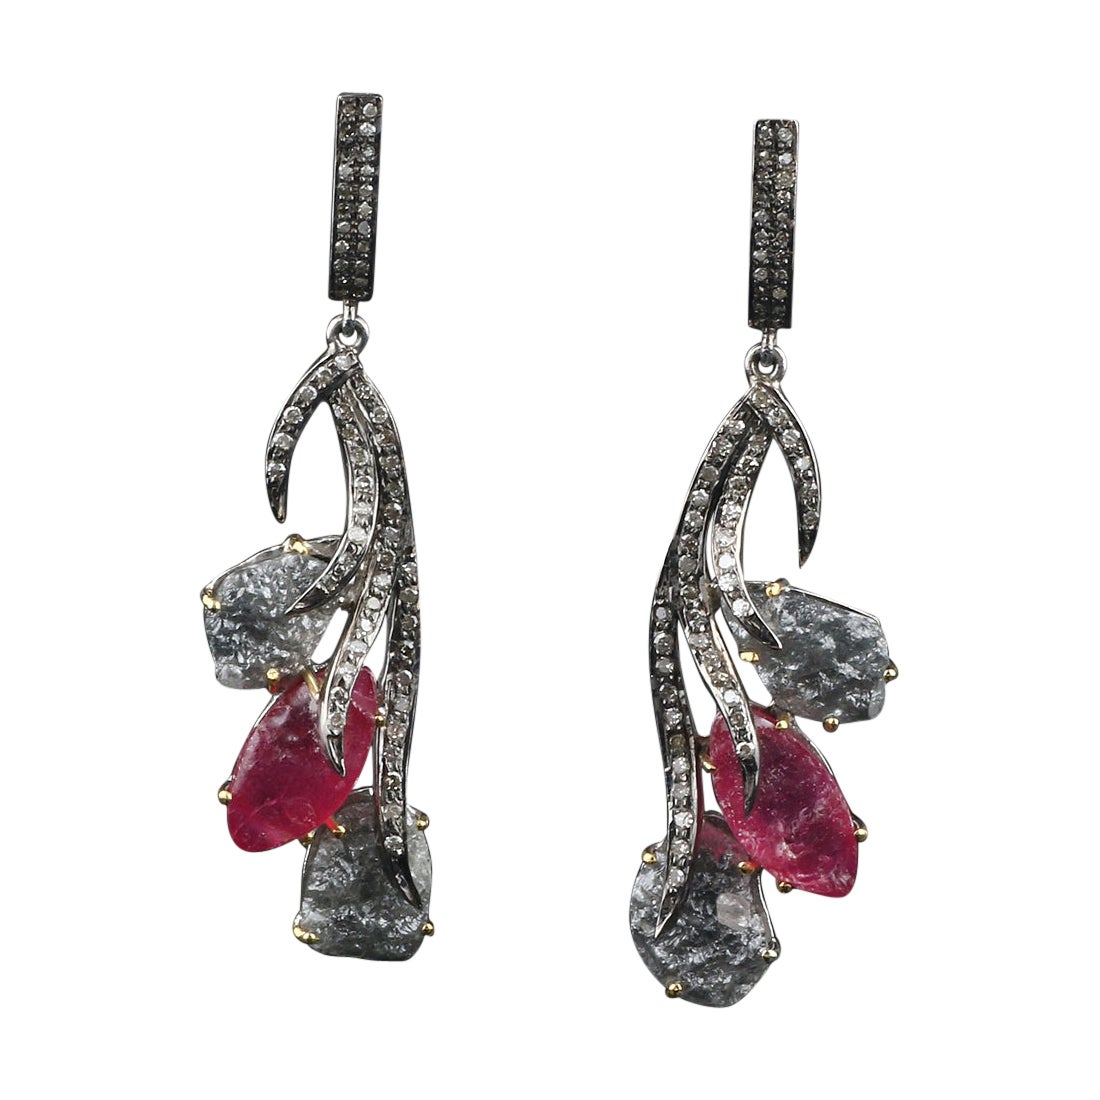 Antique Pink Tourmaline Silver Earrings, Victorian Style Diamond Dangle Earrings